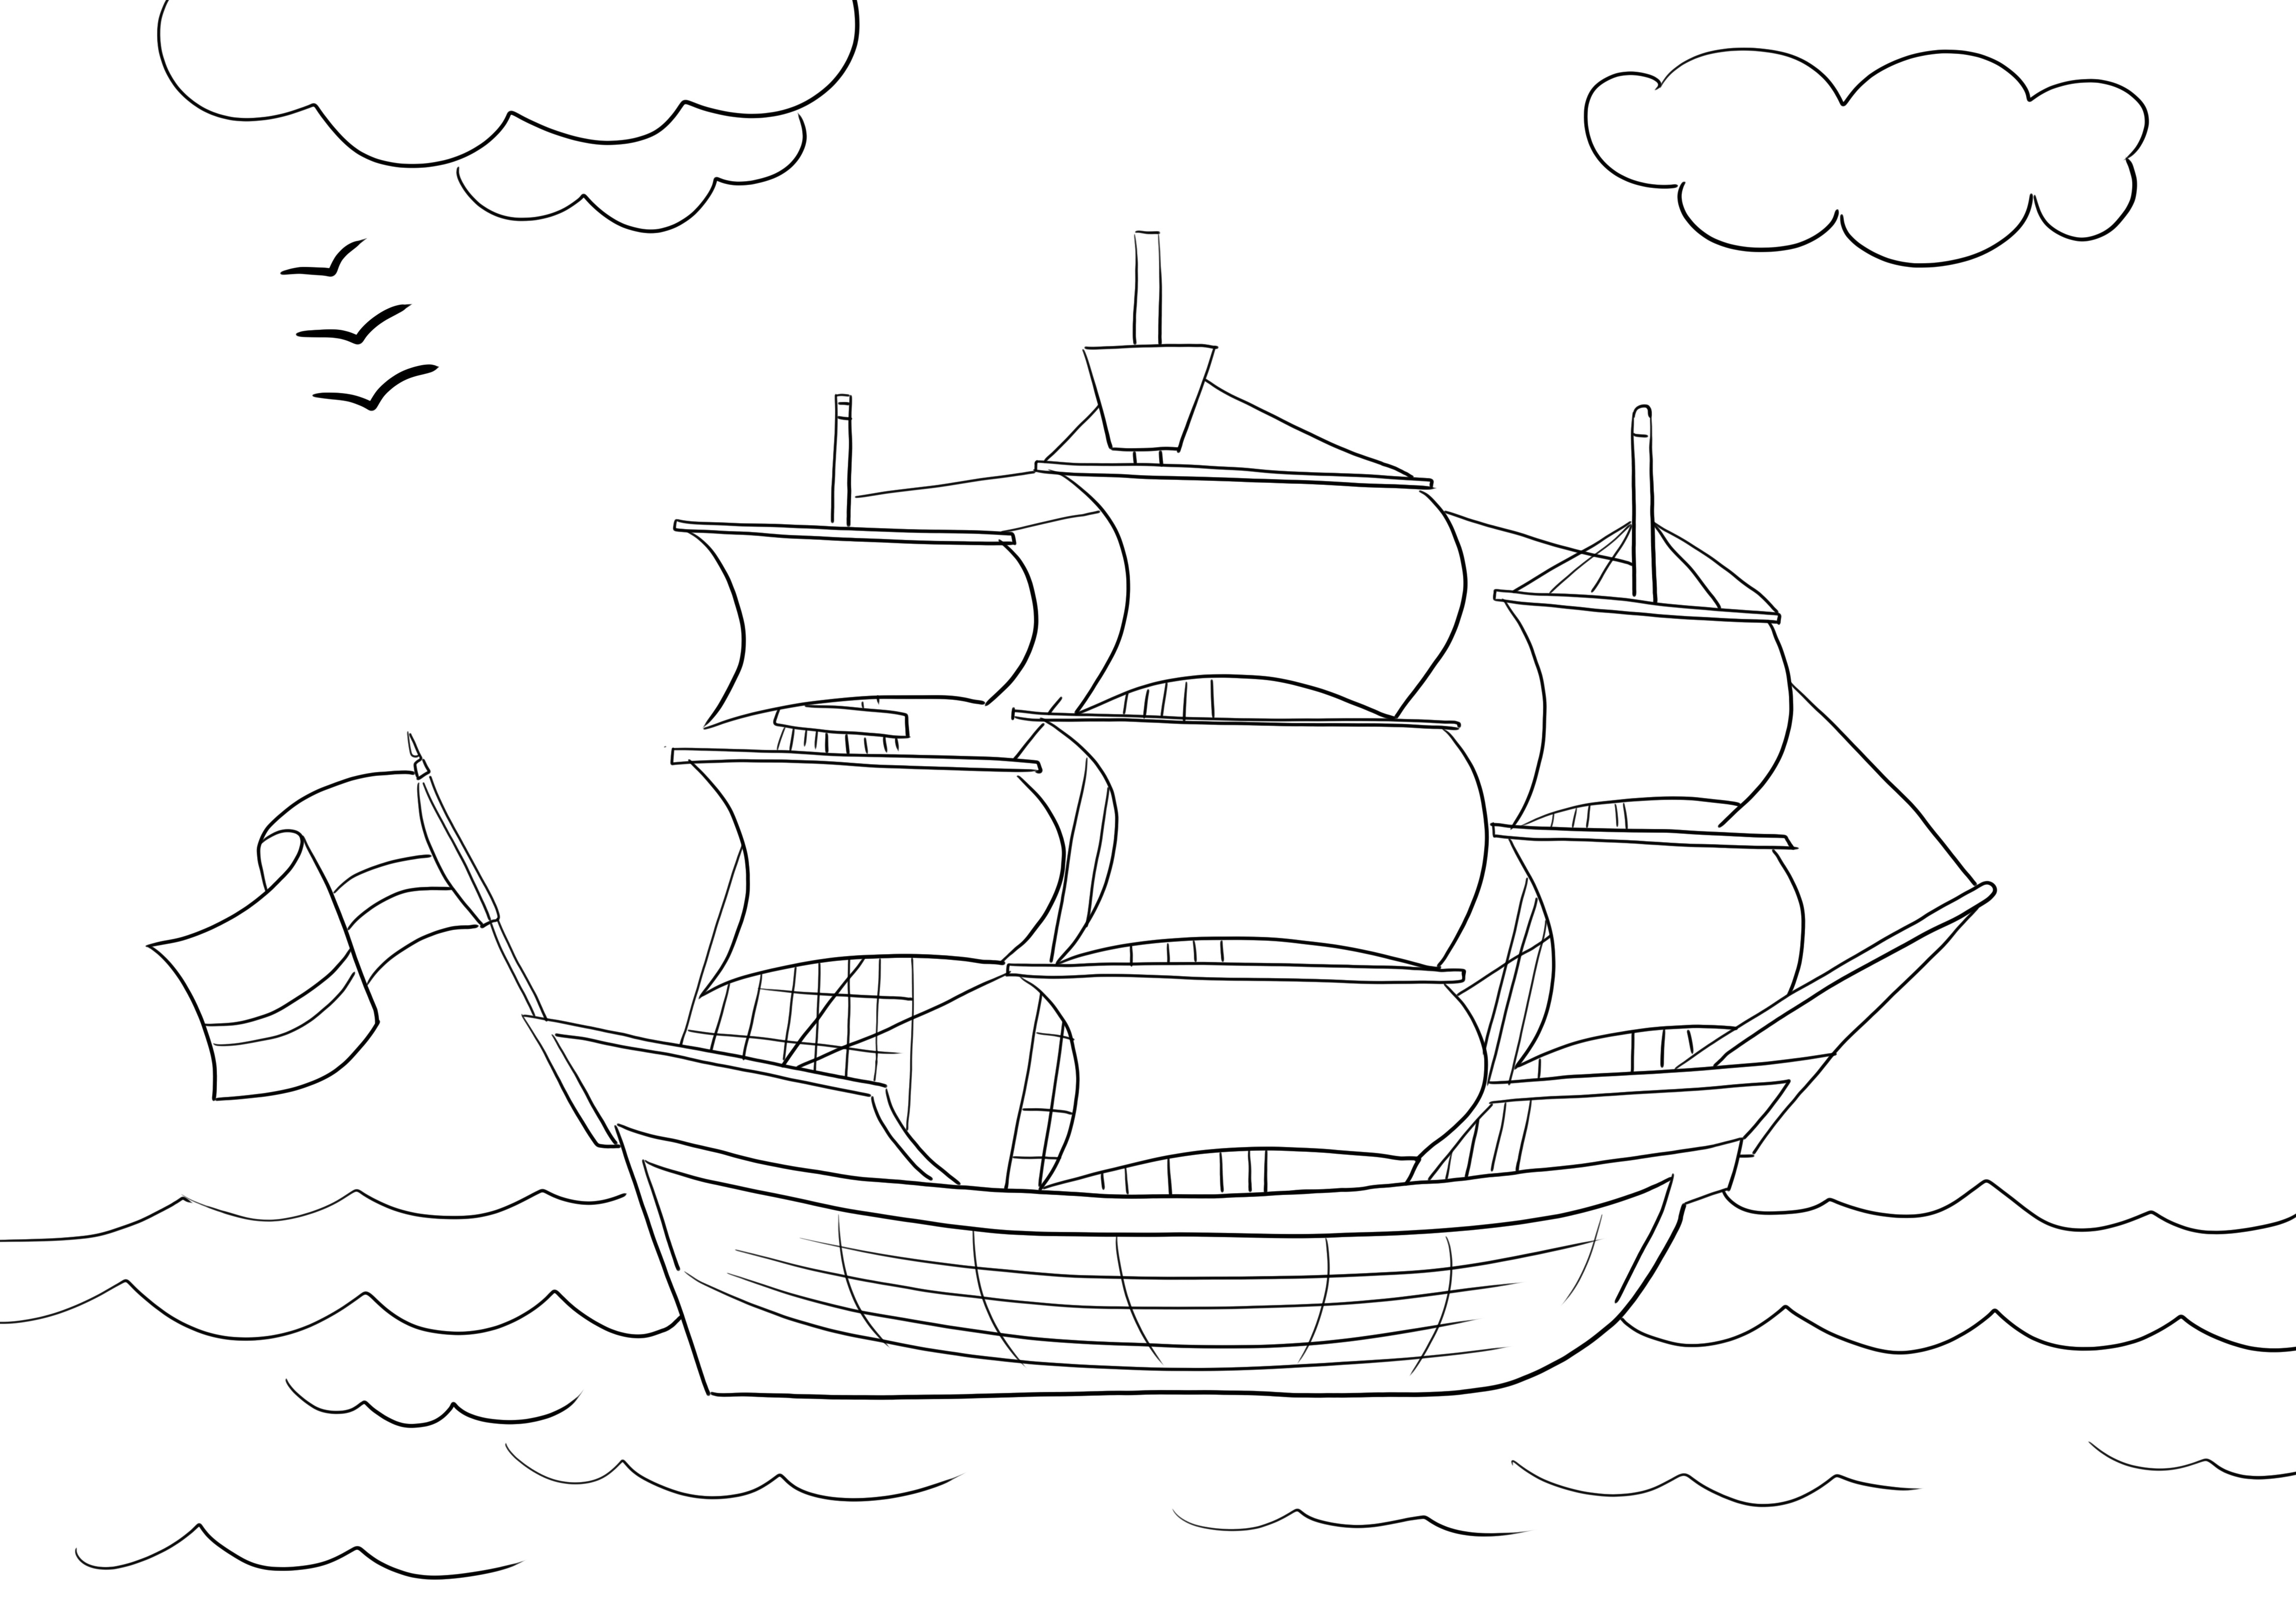 Dibujo de velero para colorear para que los niños impriman gratis